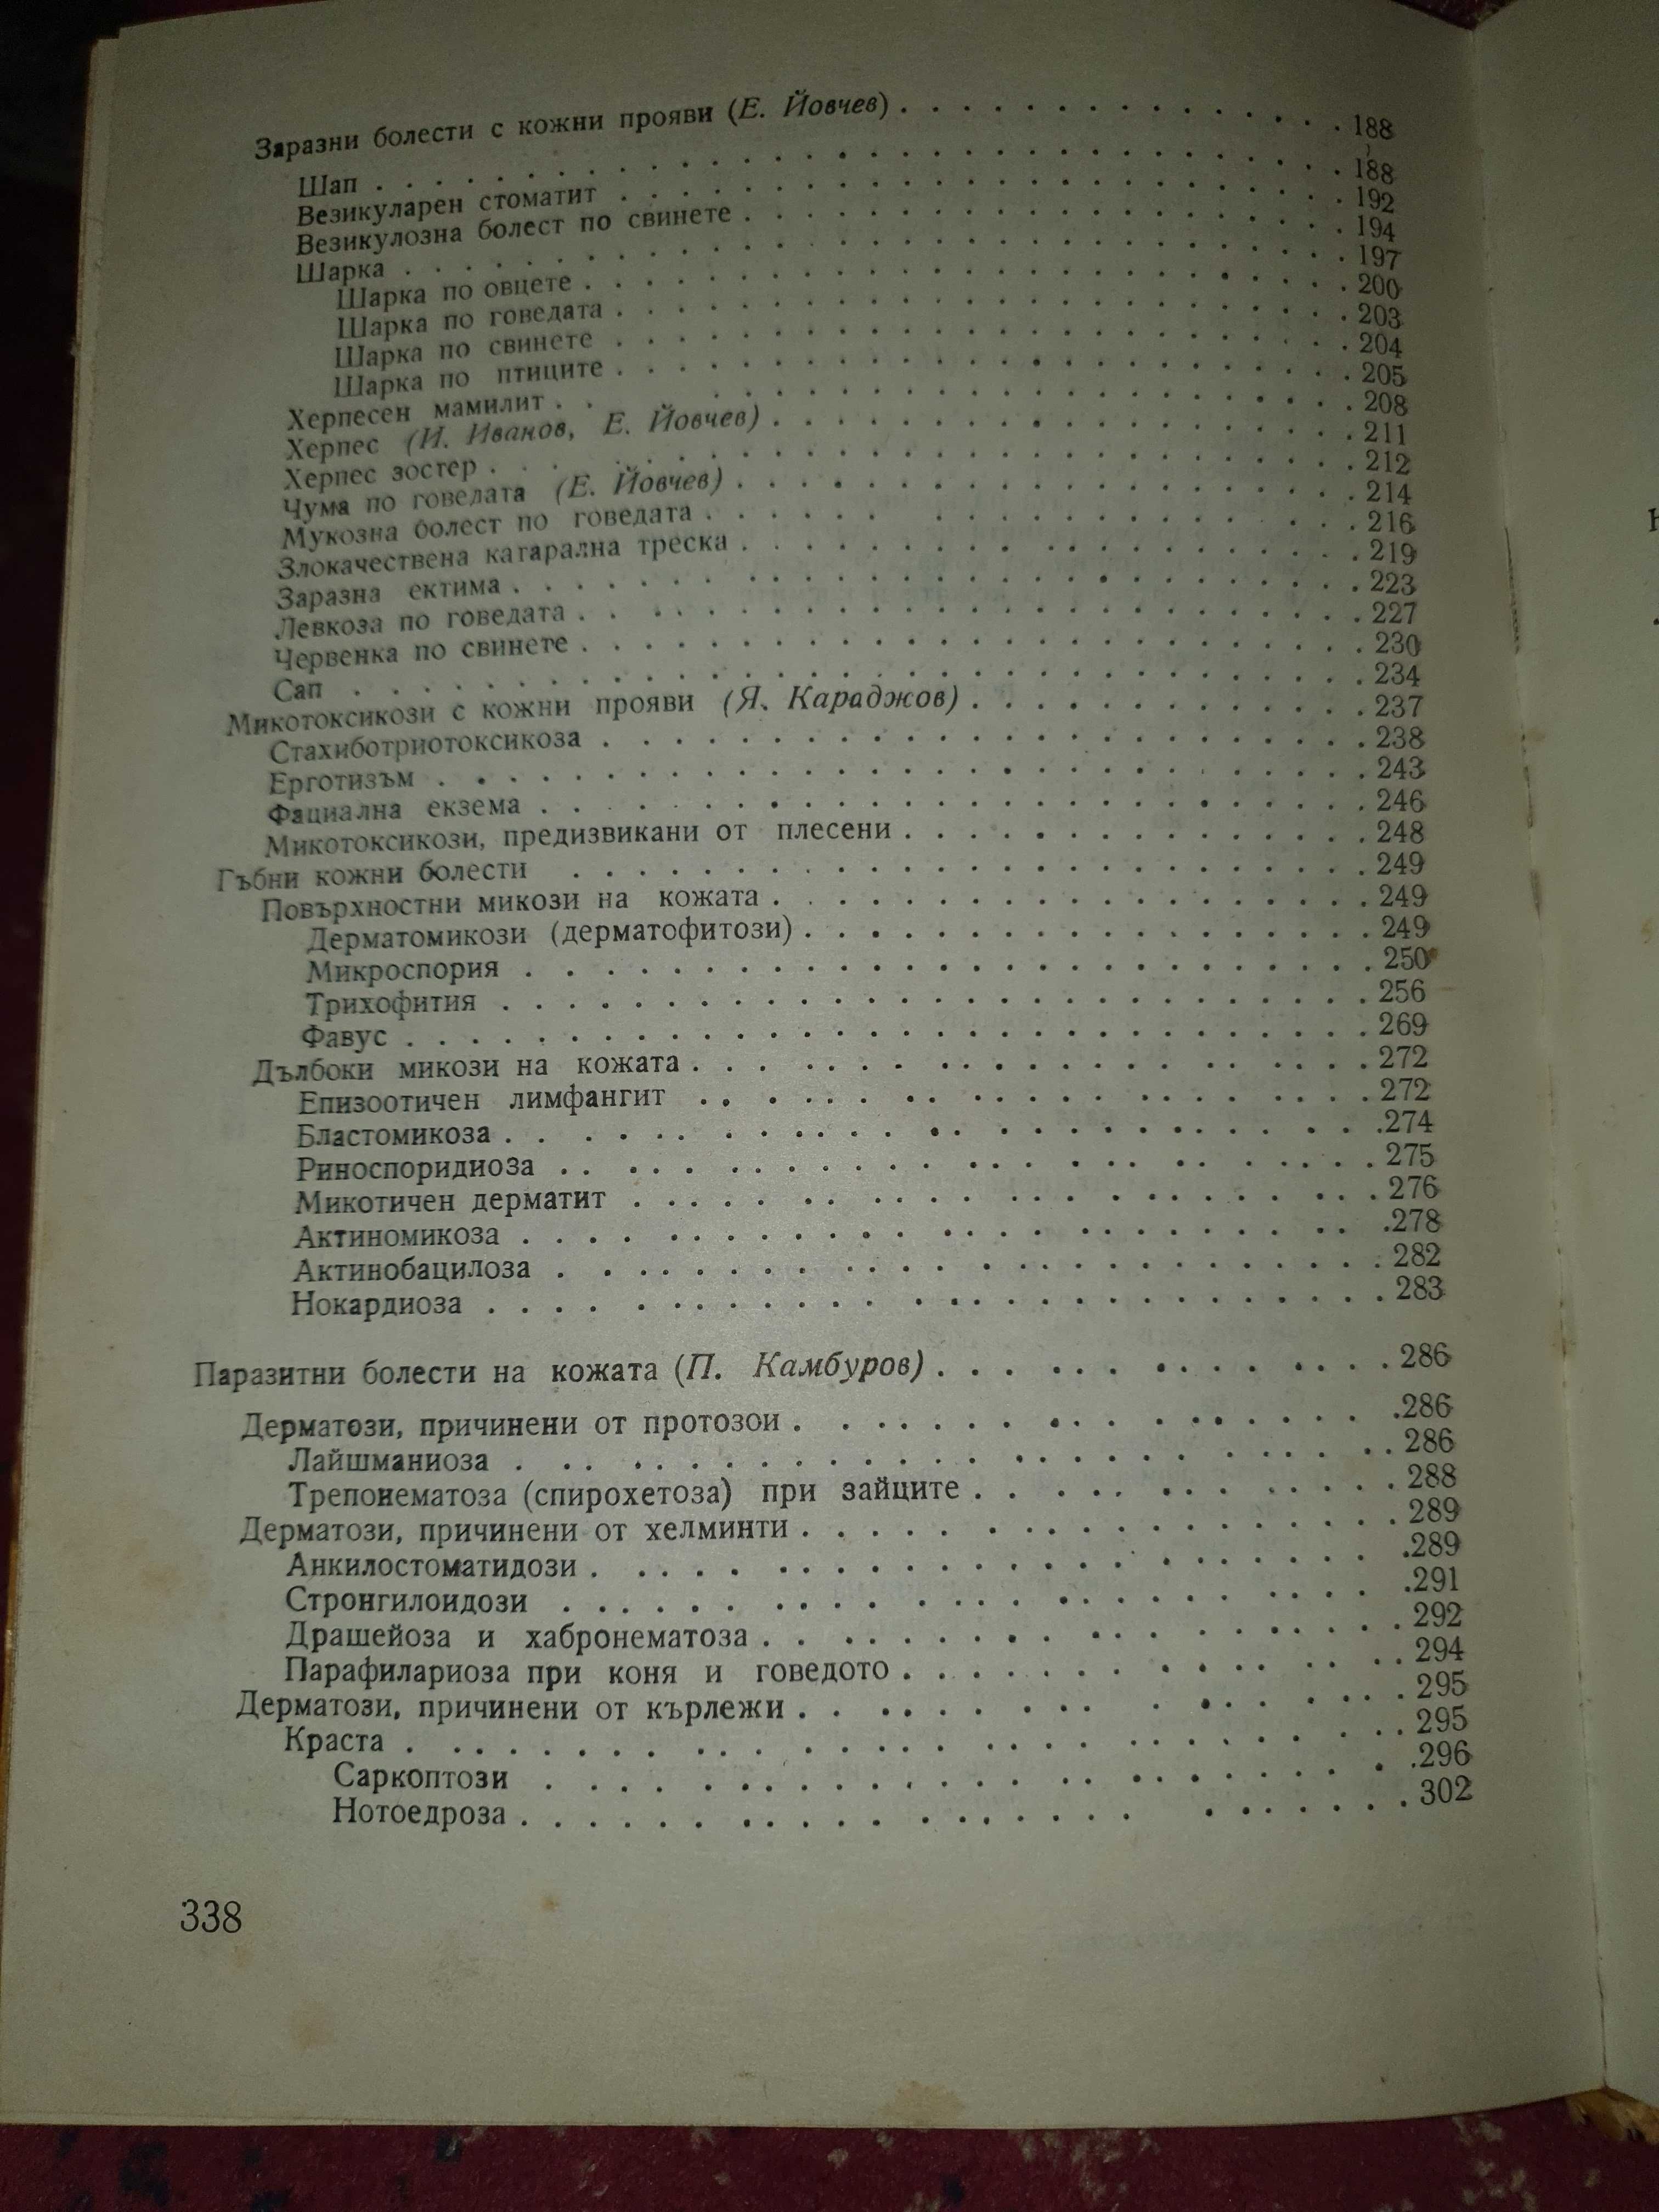 Ветеринарна дерматология, Я. Караджов,Е. Йовчев, И. Иванов, П.Камбуров